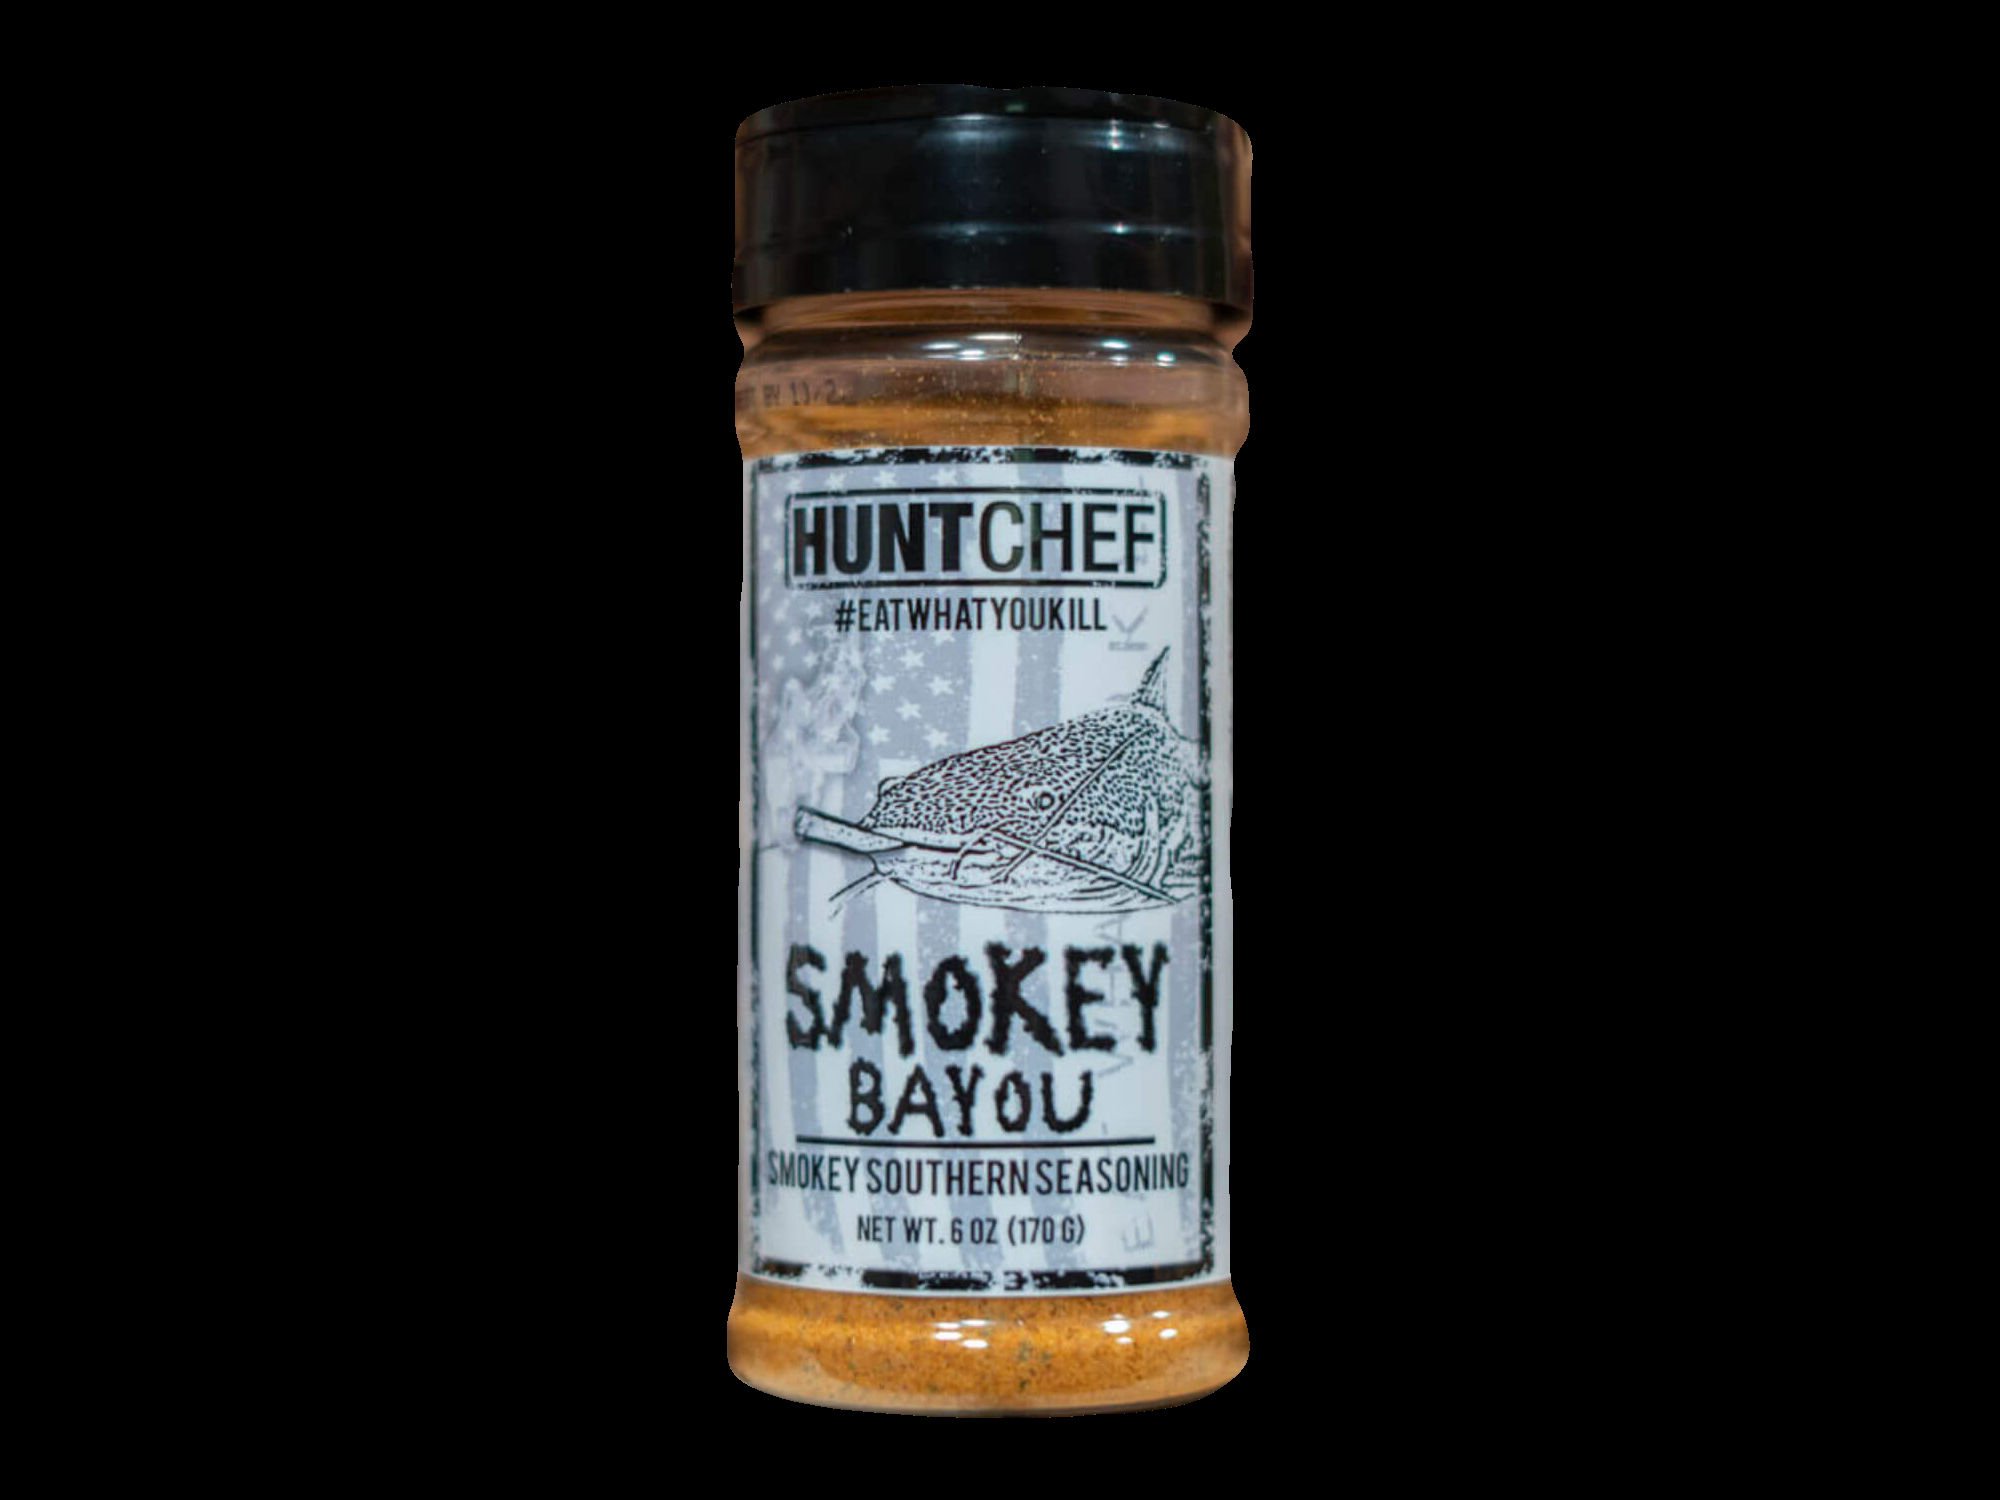 Smokey Bayou